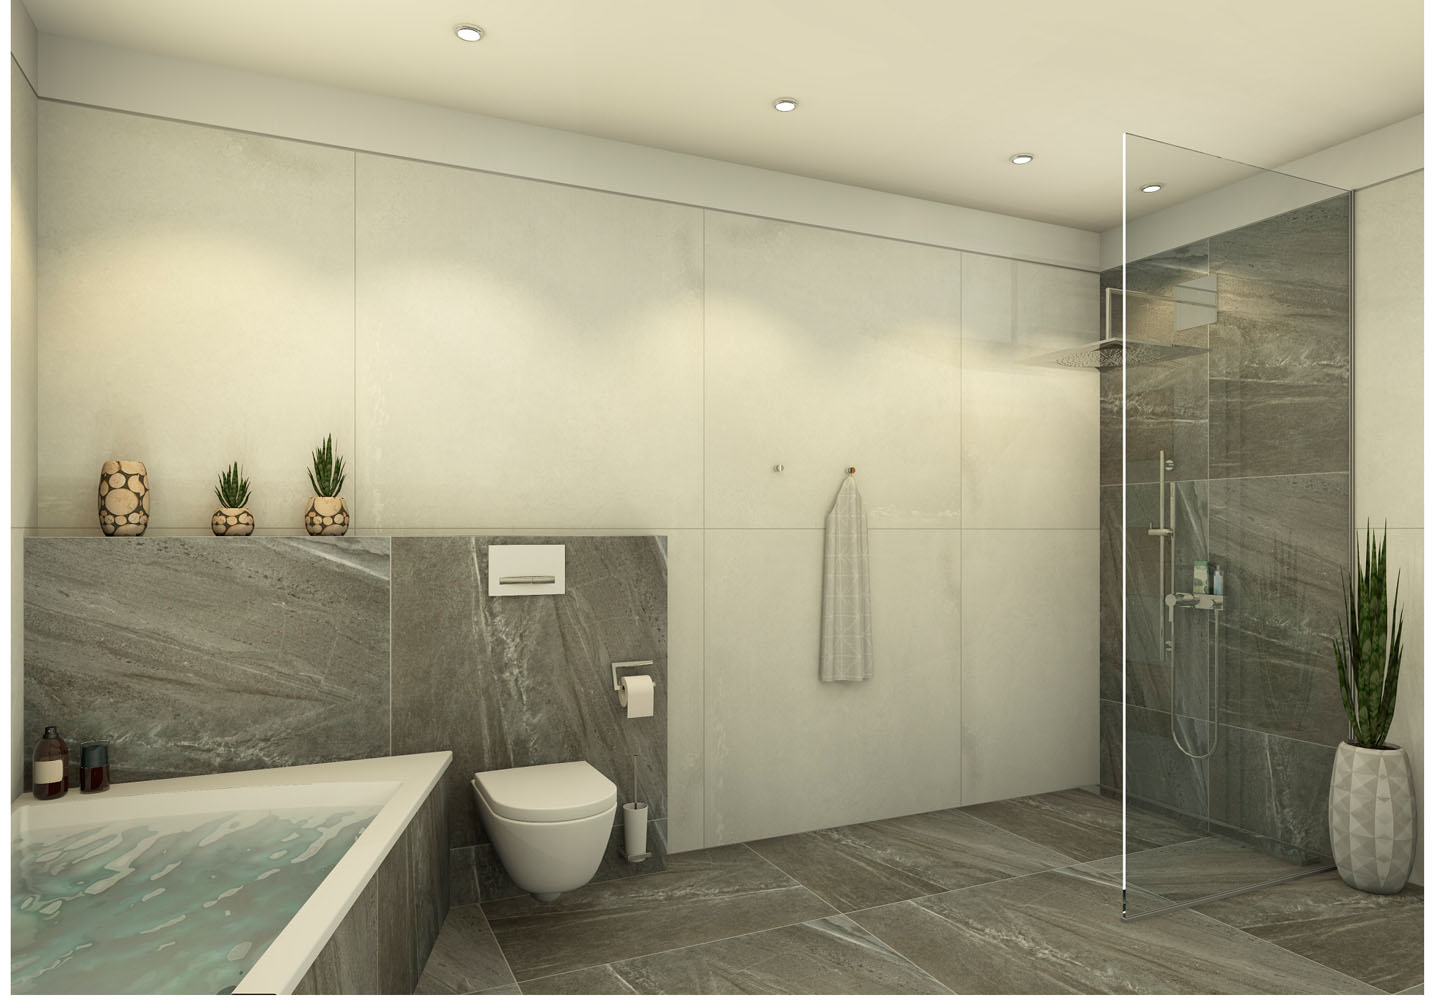 Begehbare gemauerte Dusche mit Ablage: Ein modernes Designelement im  Badezimmer - Wohntrends Magazin